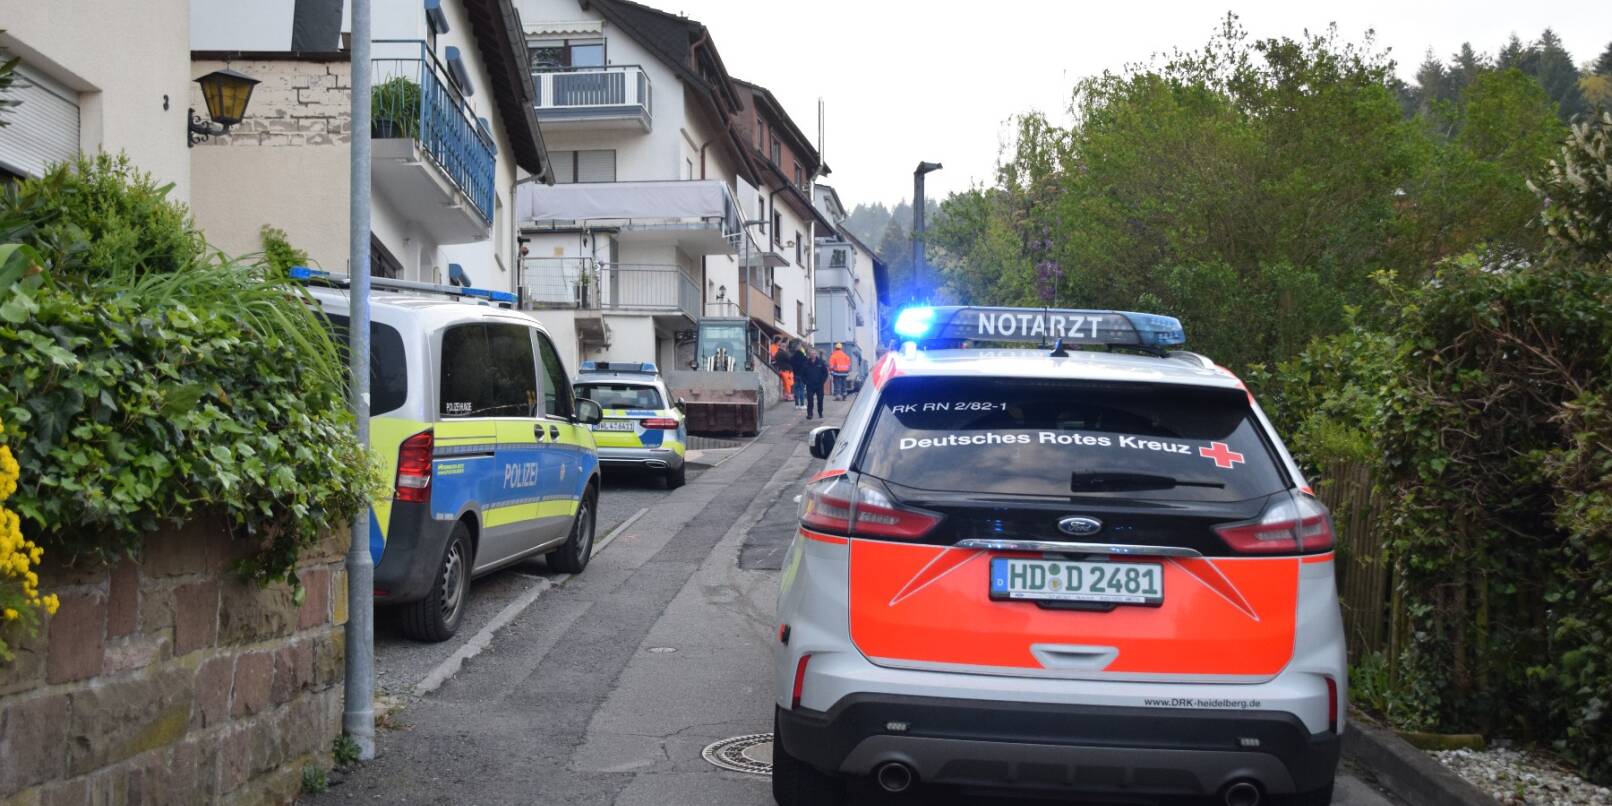 Notarzt, Polizei und Rettungsdienst waren am Donnerstag in Schriesheim im Ortsteil Altenbach im Einsatz.